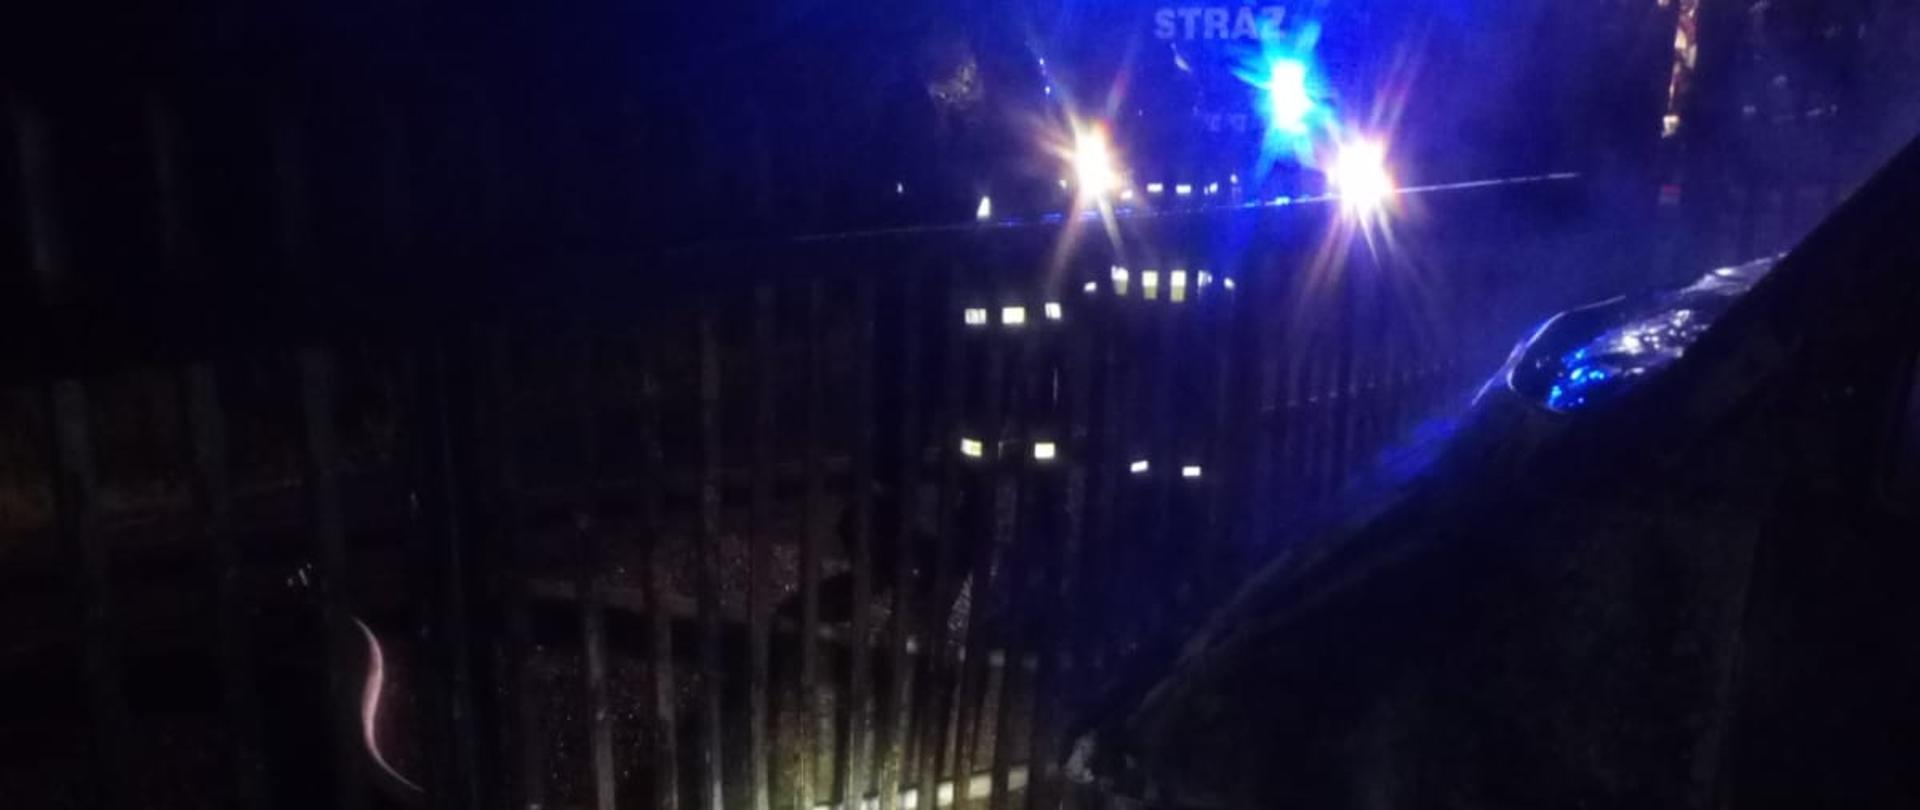 Na zdjęciu wykonanym w porze nocnej widoczny jest przód autobusu, który uległ spaleniu oraz brama. Za ogrodzeniem stoi samochód strażacki oświetlony niebieskimi lampami sygnalizacyjnymi.